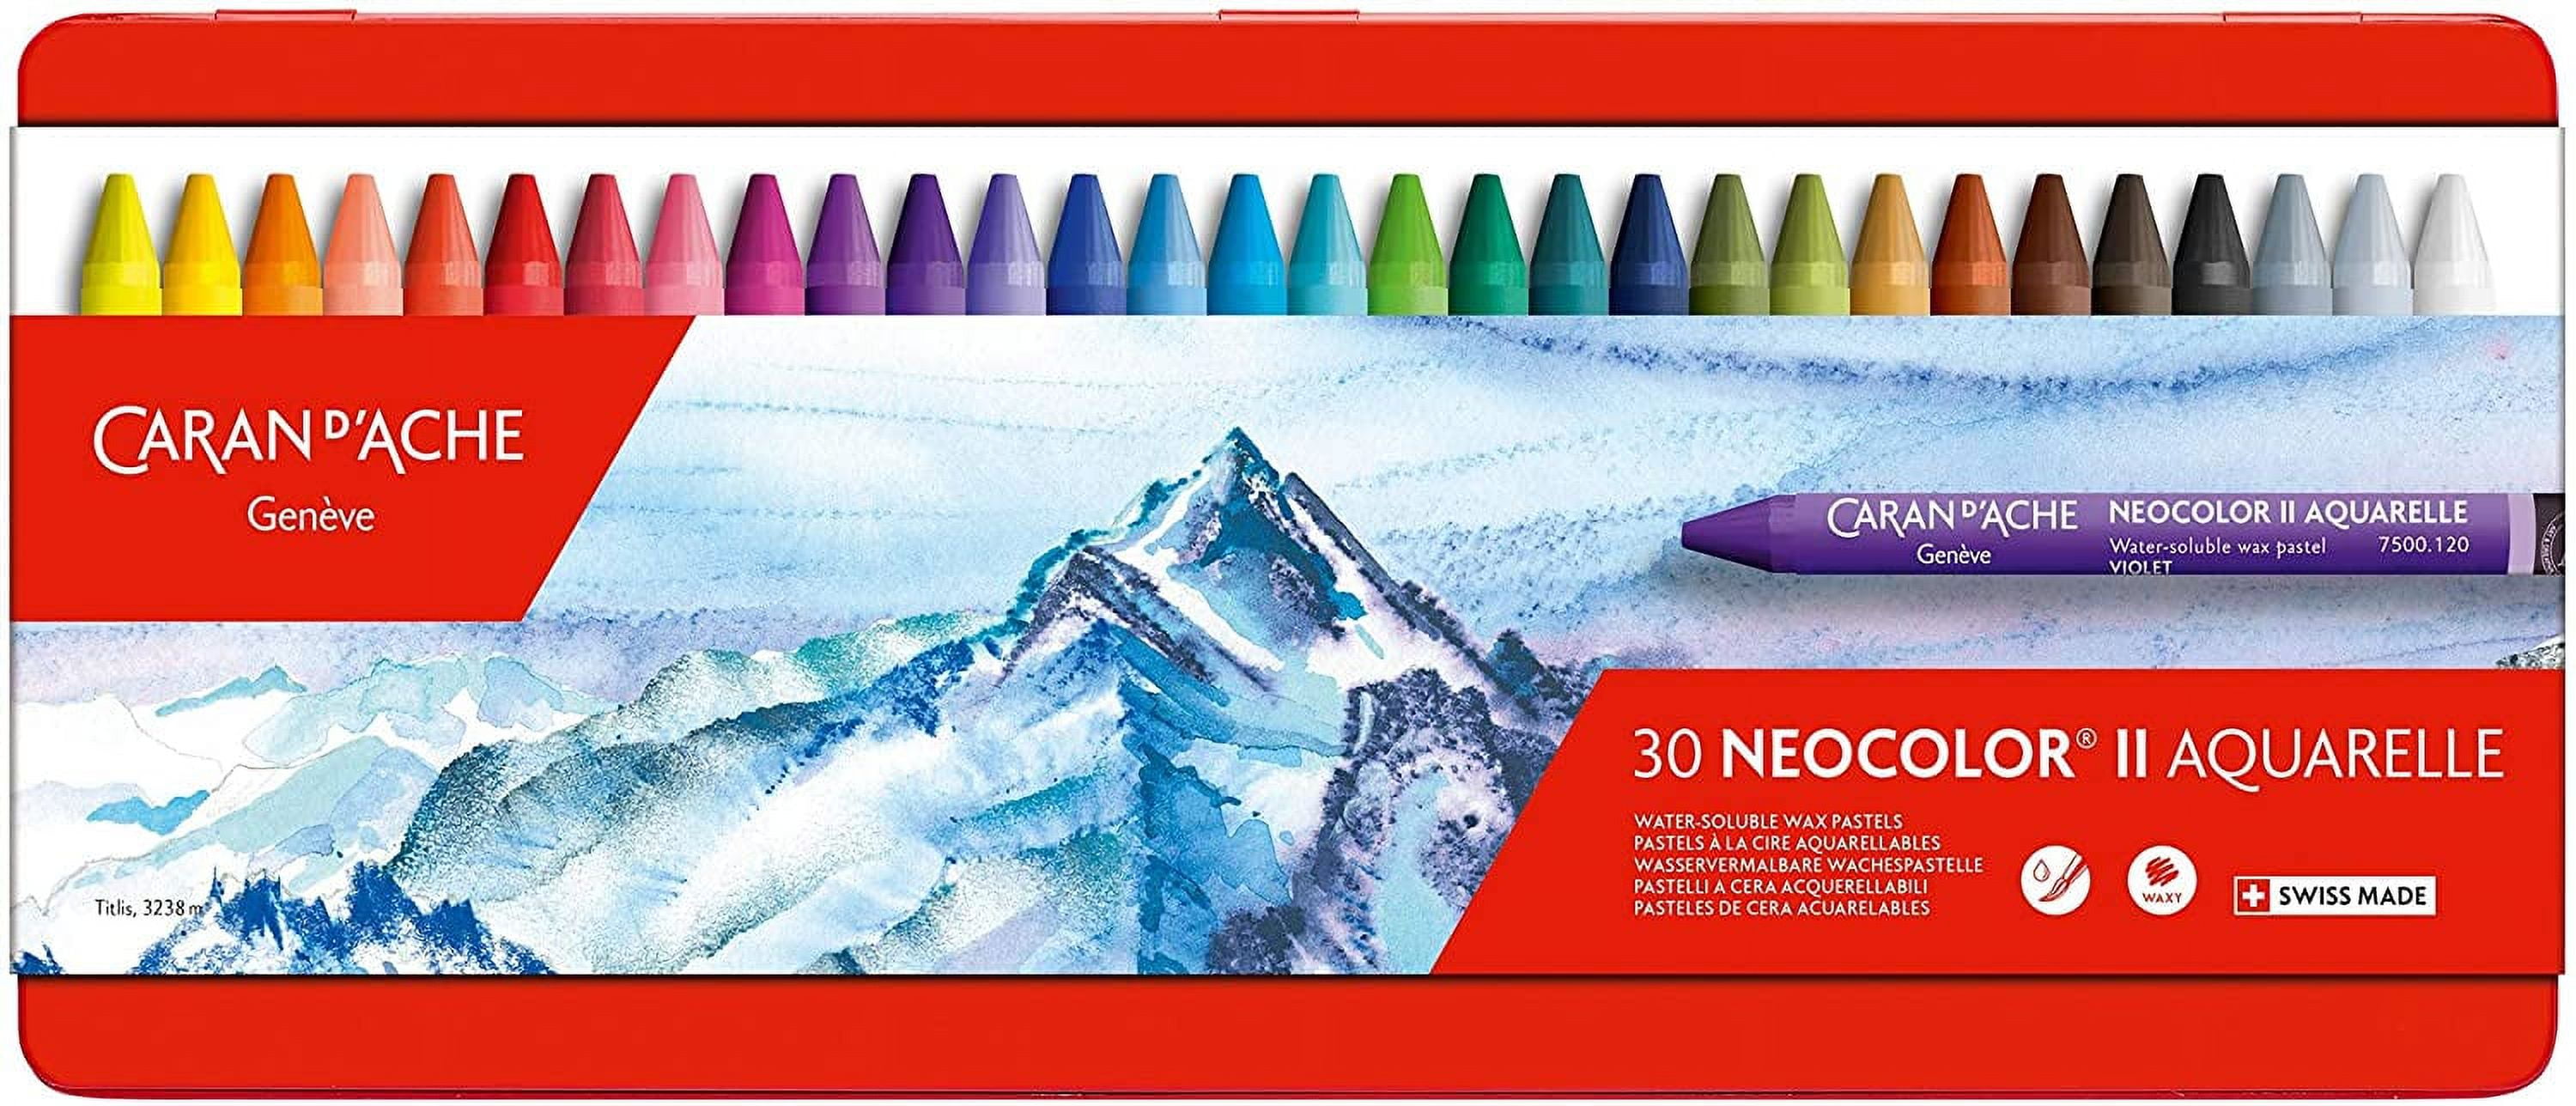 CARAN D'ACHE Crayons de cire Neocolor 1 7004.310 10 couleurs box métal -  Ecomedia AG